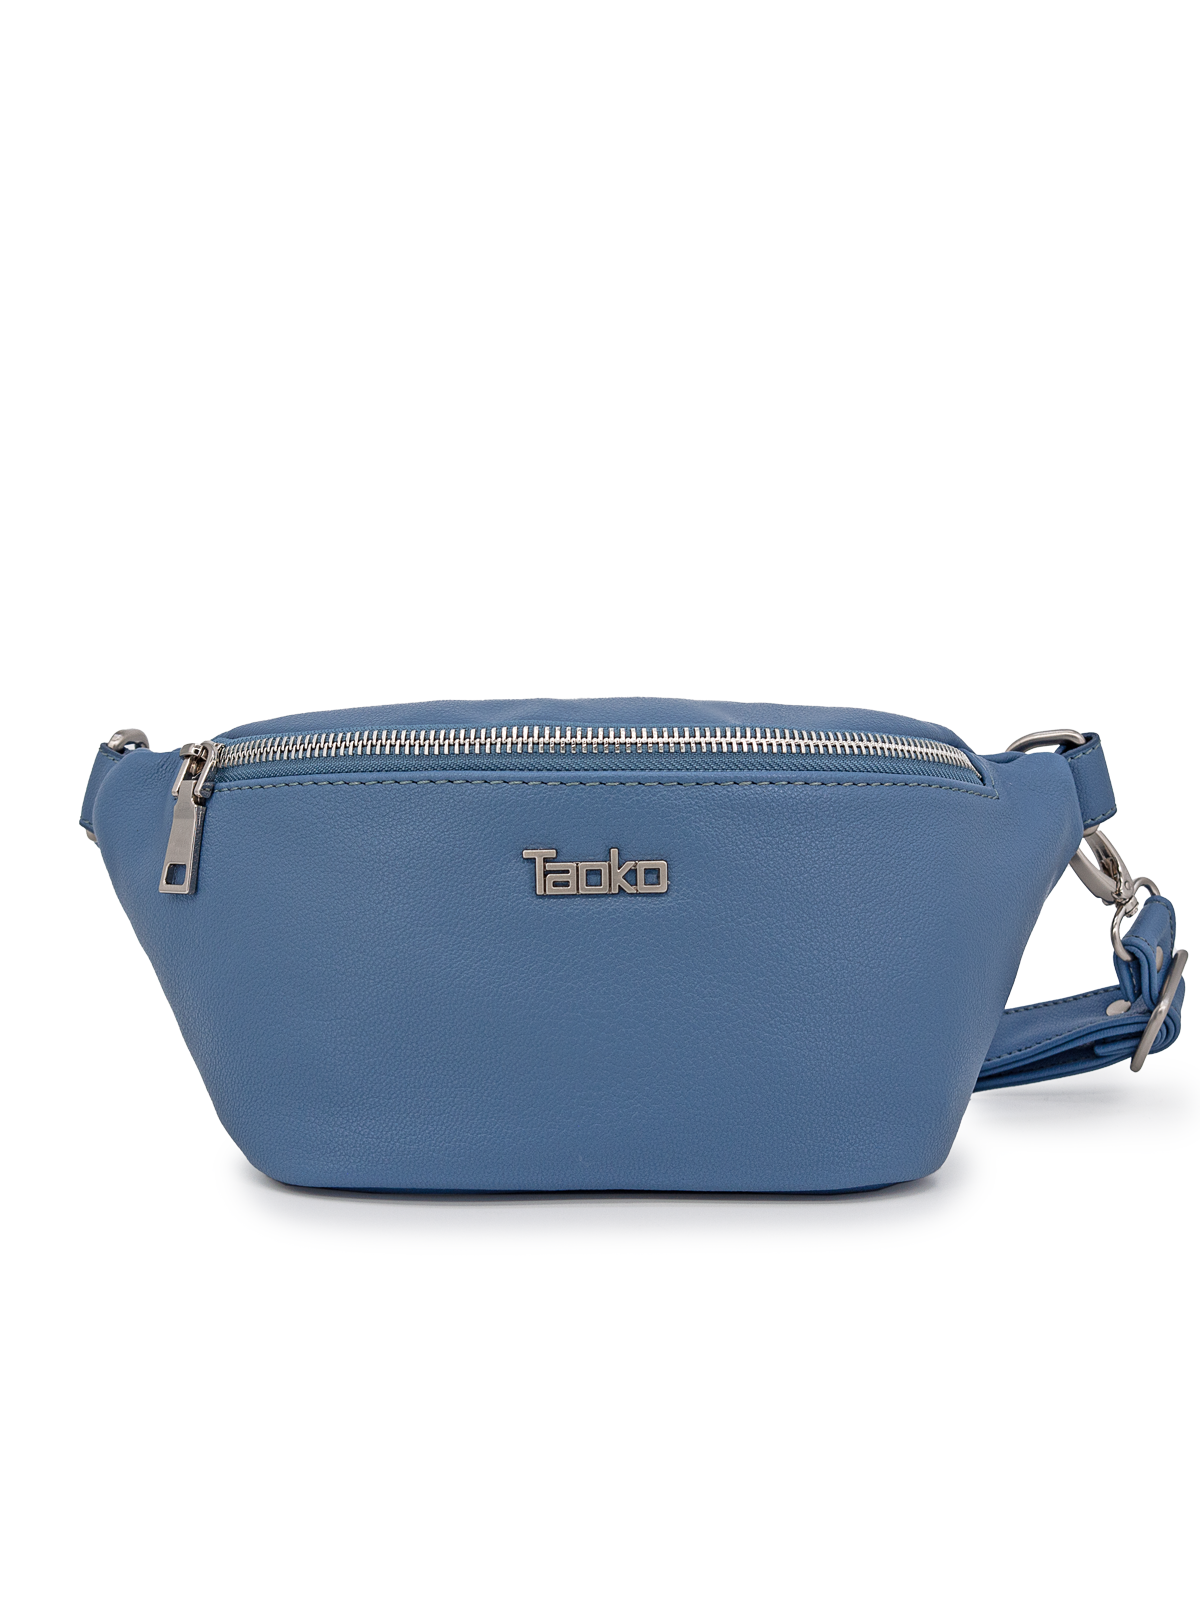 Поясная сумка женская Taoko Tanishi 4332, джинс